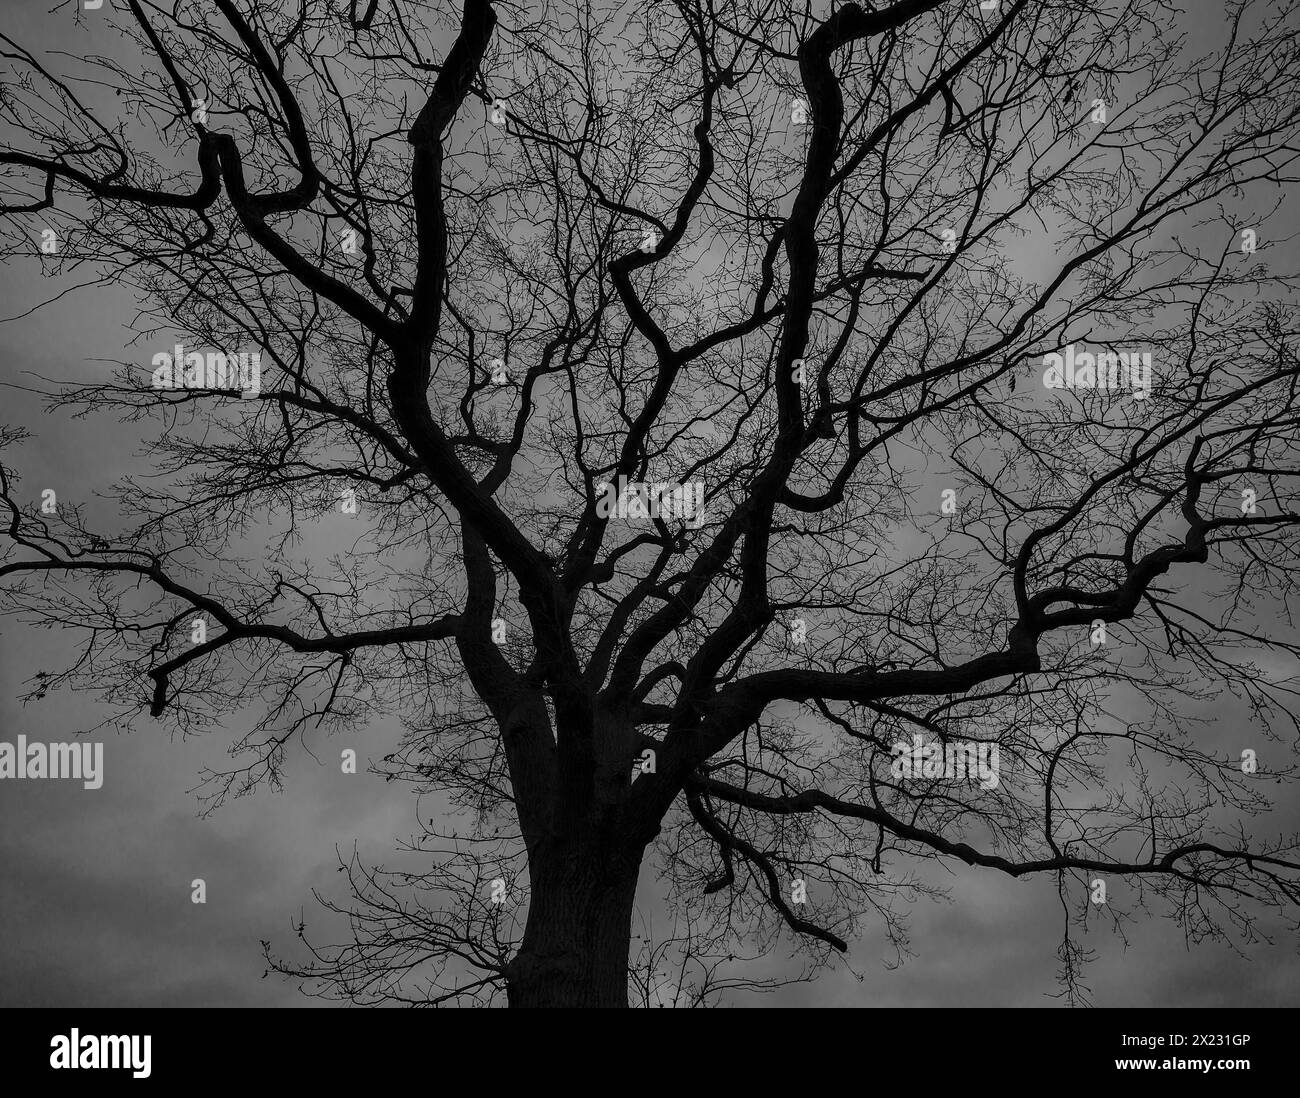 Spectaculaire, fantomatique, chêne (Quercus) silhouetté sur le ciel pluvieux, Mecklenburg-Poméranie occidentale, Allemagne Banque D'Images